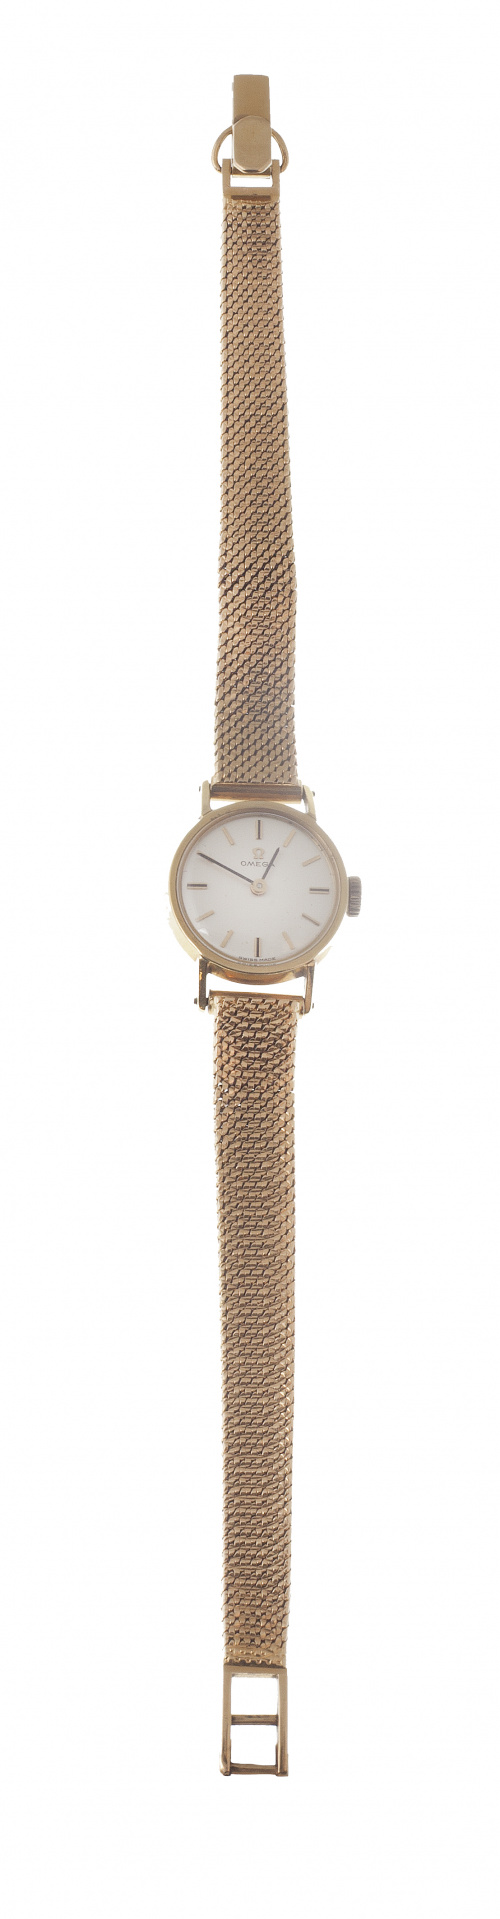 Reloj de Sra. OMEGA años 60 en oro